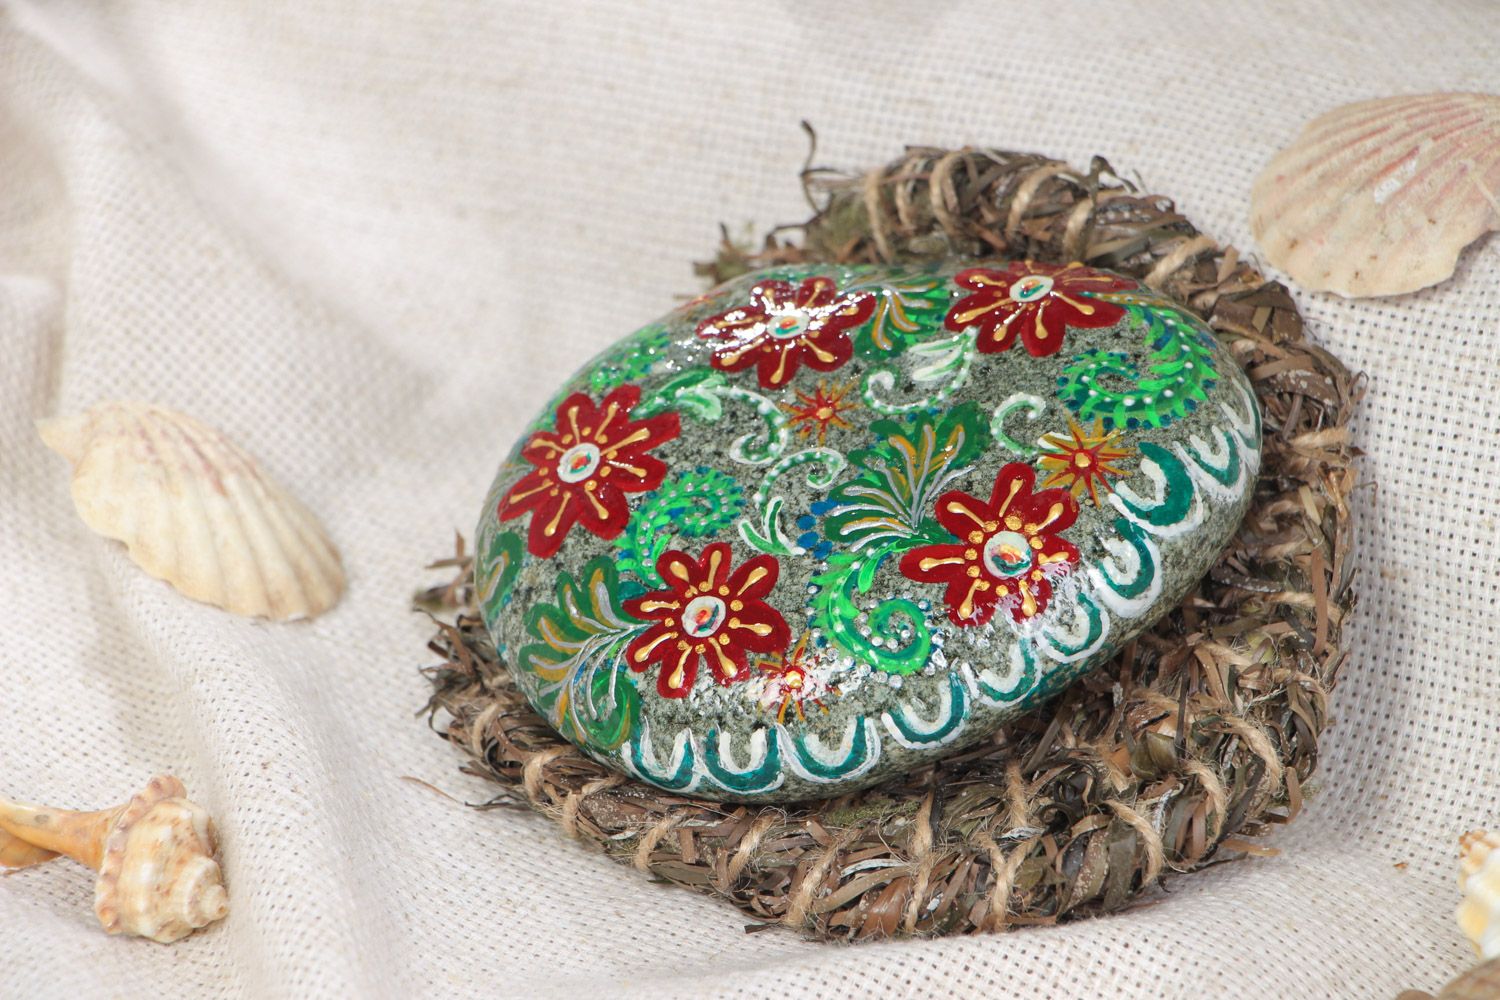 Морской камень с росписью на поставке из водорослей для декора дома хенд мэйд фото 1